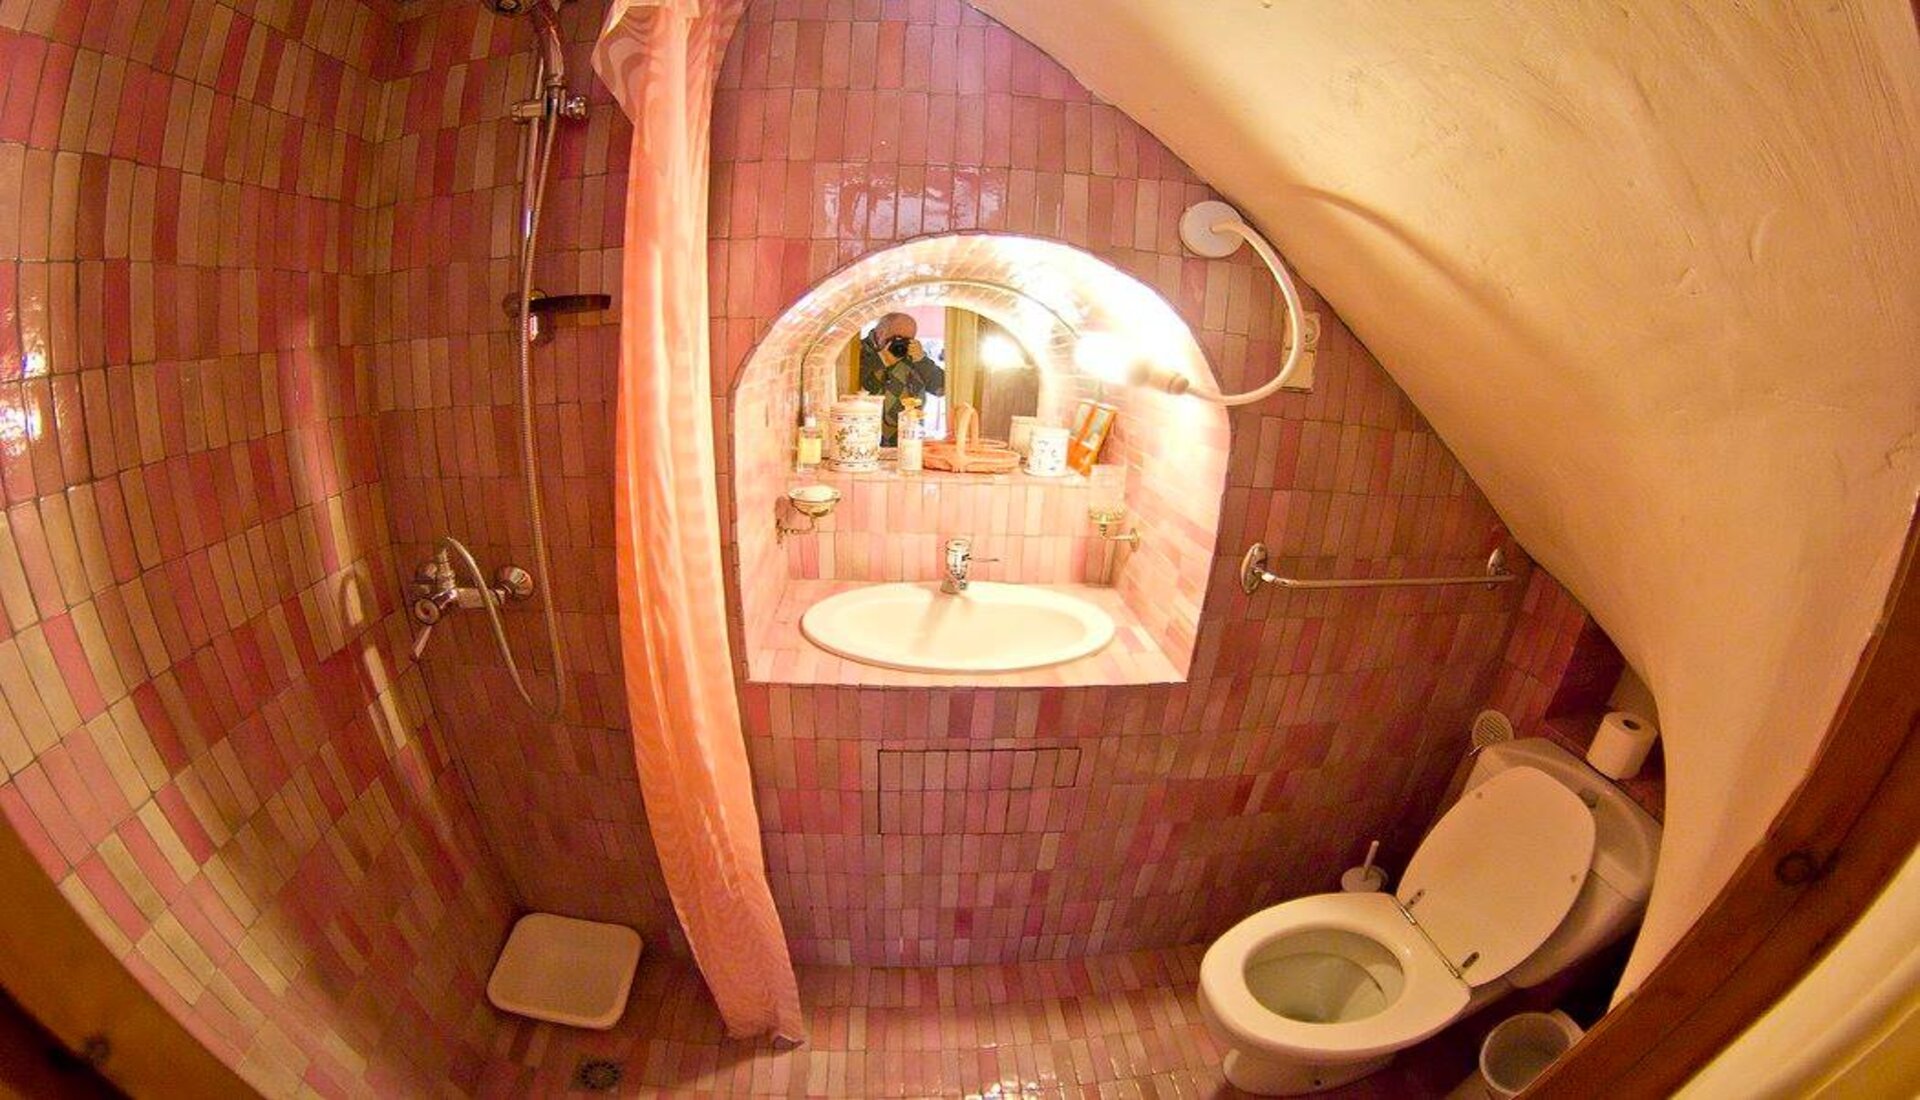 Salle de bain - WC - Domaine de Beauveset